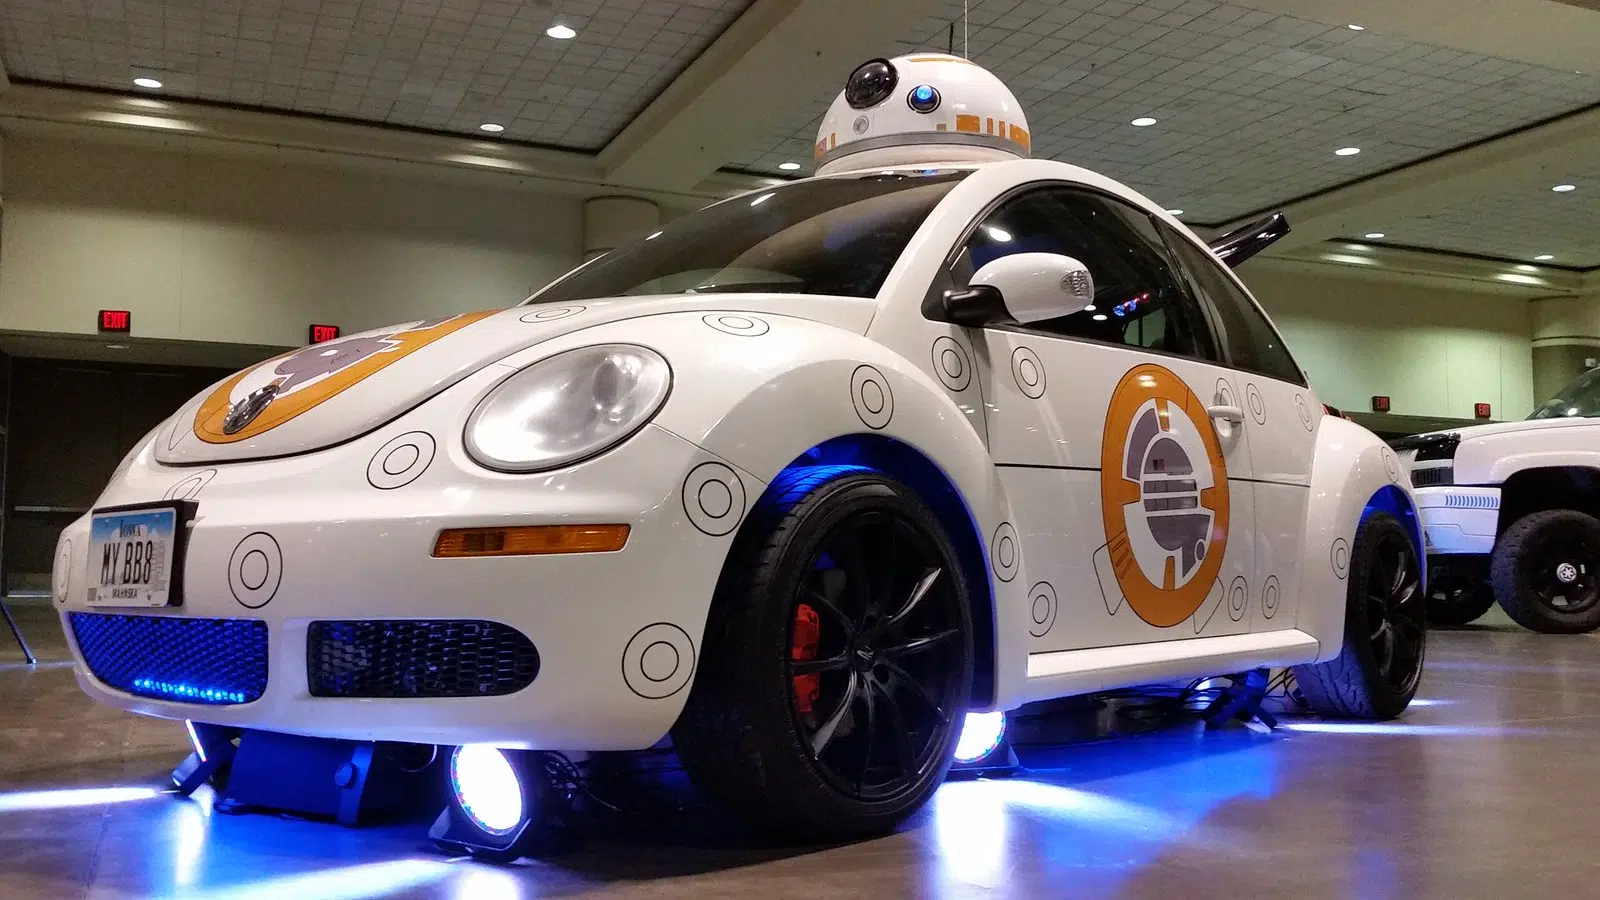 Photographie d’une voiture autonome exposée au Star Wars Celebration à Orlando en 2017 pour illustrer le site des ventes aux enchères en ligne Adesa